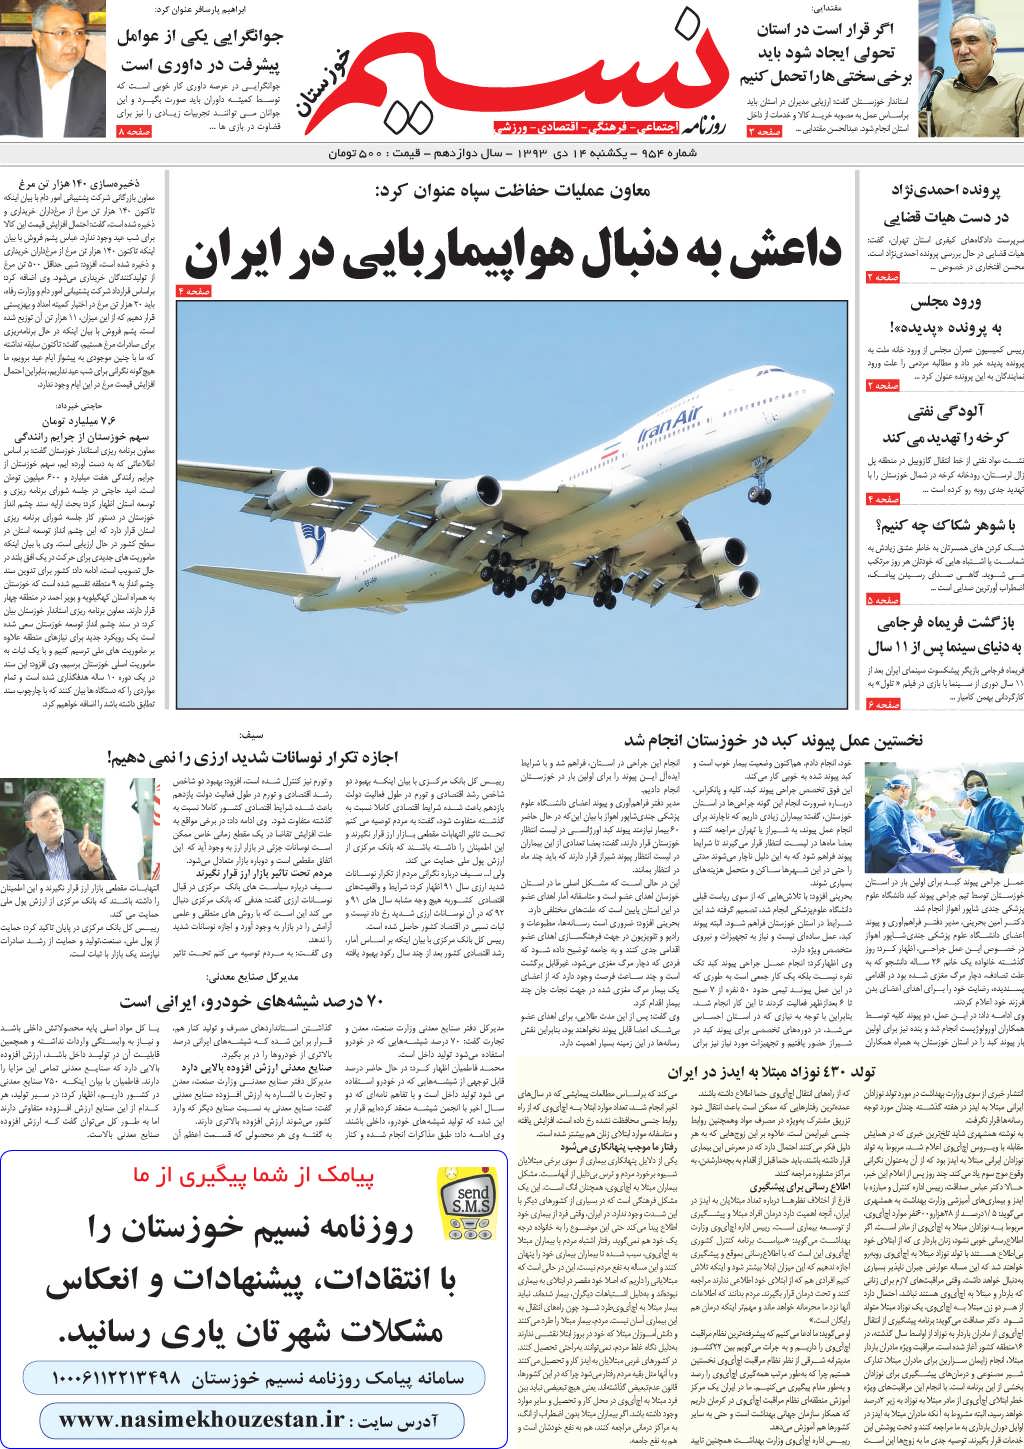 صفحه اصلی روزنامه نسیم شماره 954 